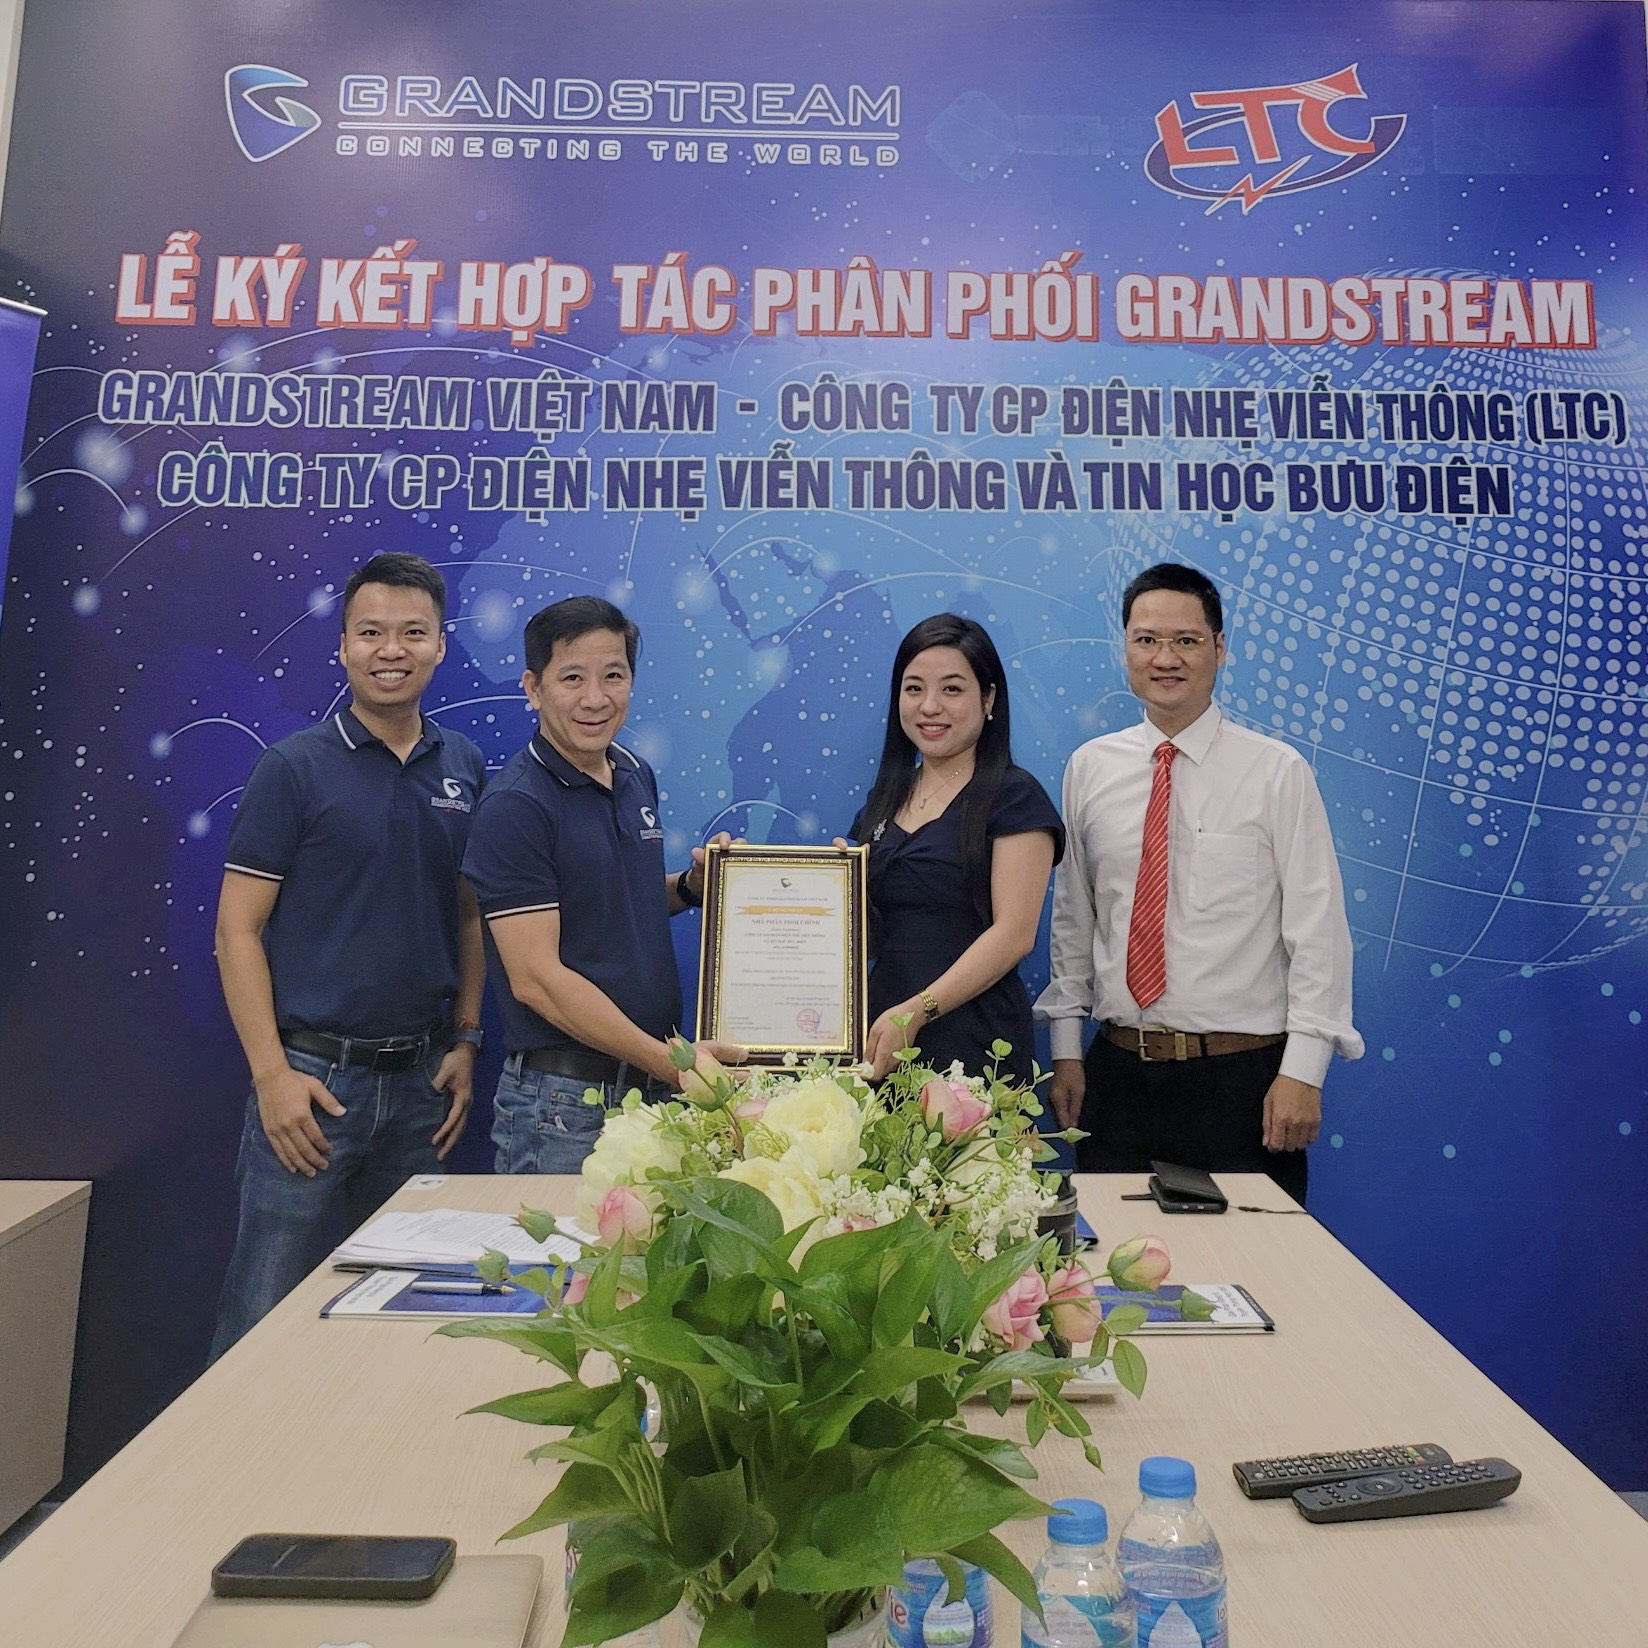 Grandstream Việt Nam đã ký chứng nhận LTC là nhà phân phối chiến lược các dòng sản phẩm và giải pháp của Grandstream tại thị trường Việt Nam.